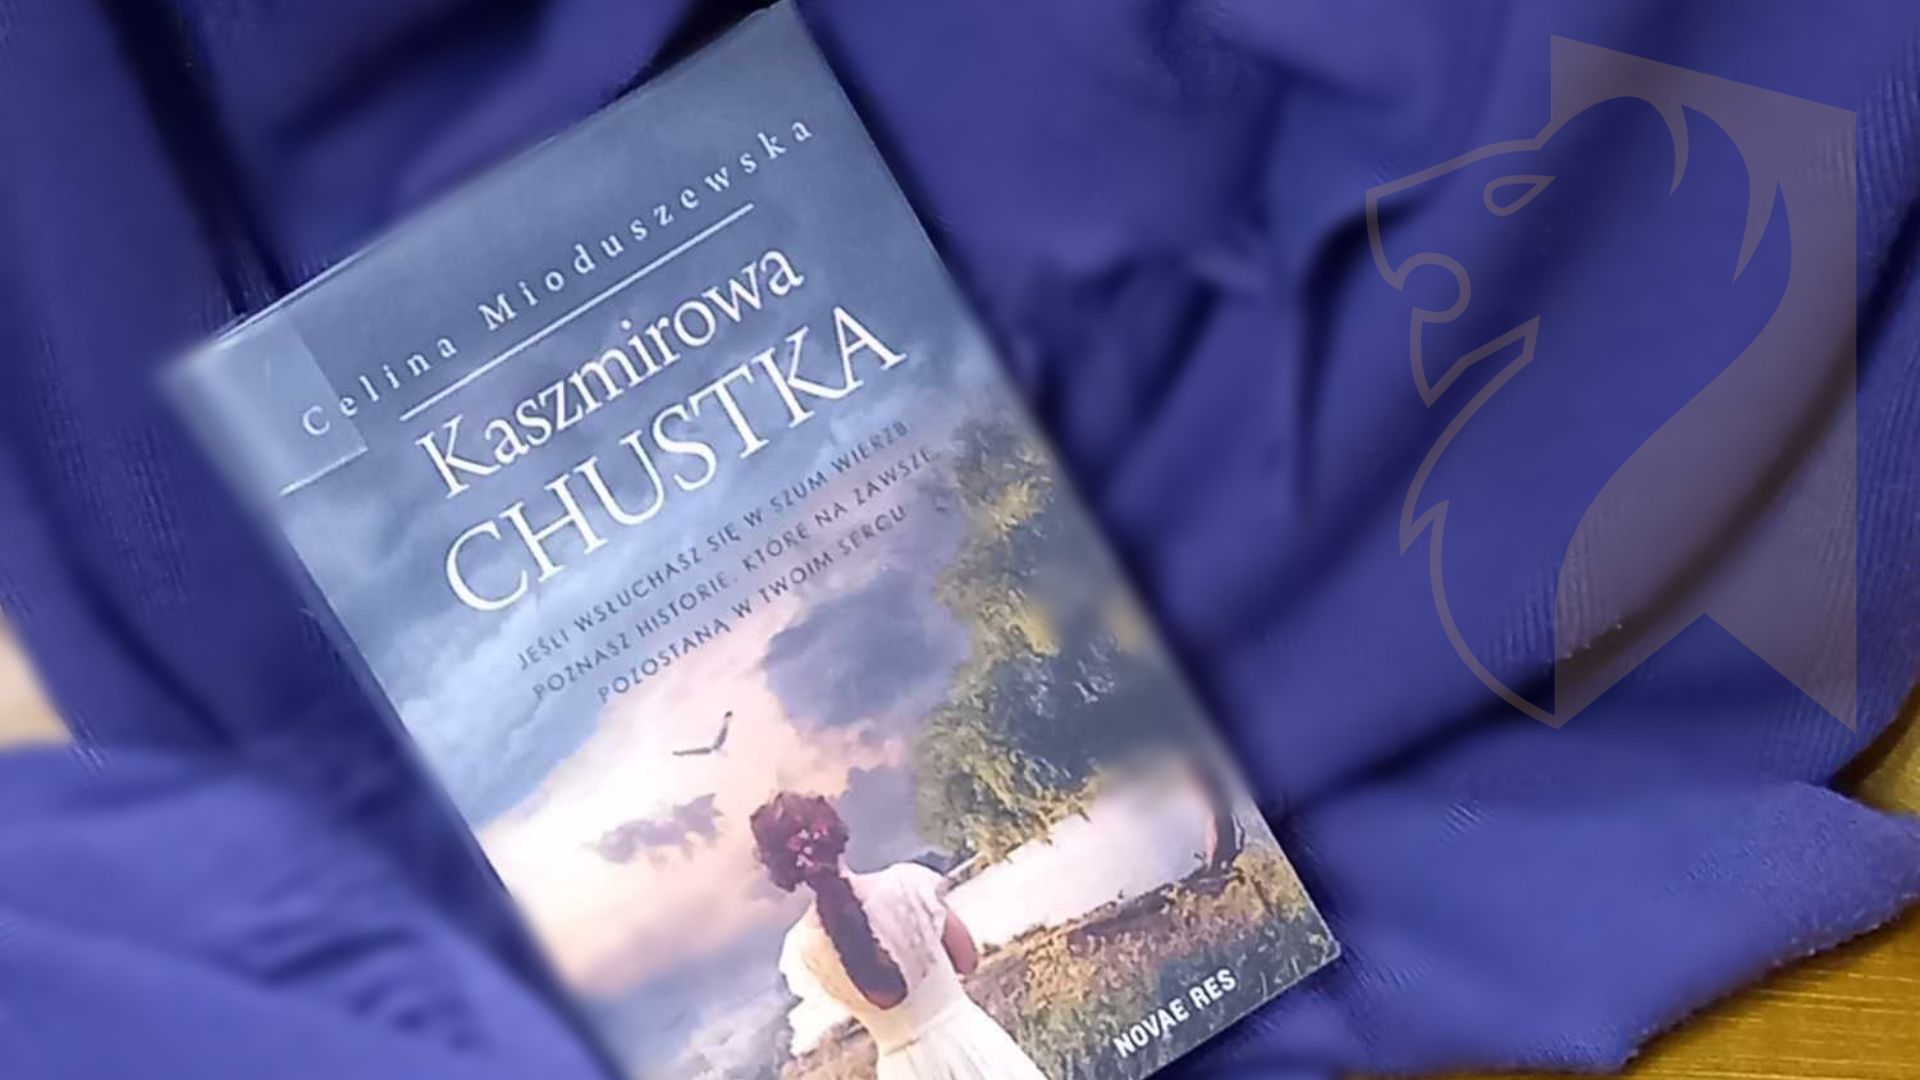 Na fioletowej chuście książka Celiny Mioduszewskiej pt. Kaszmirowa chustka.